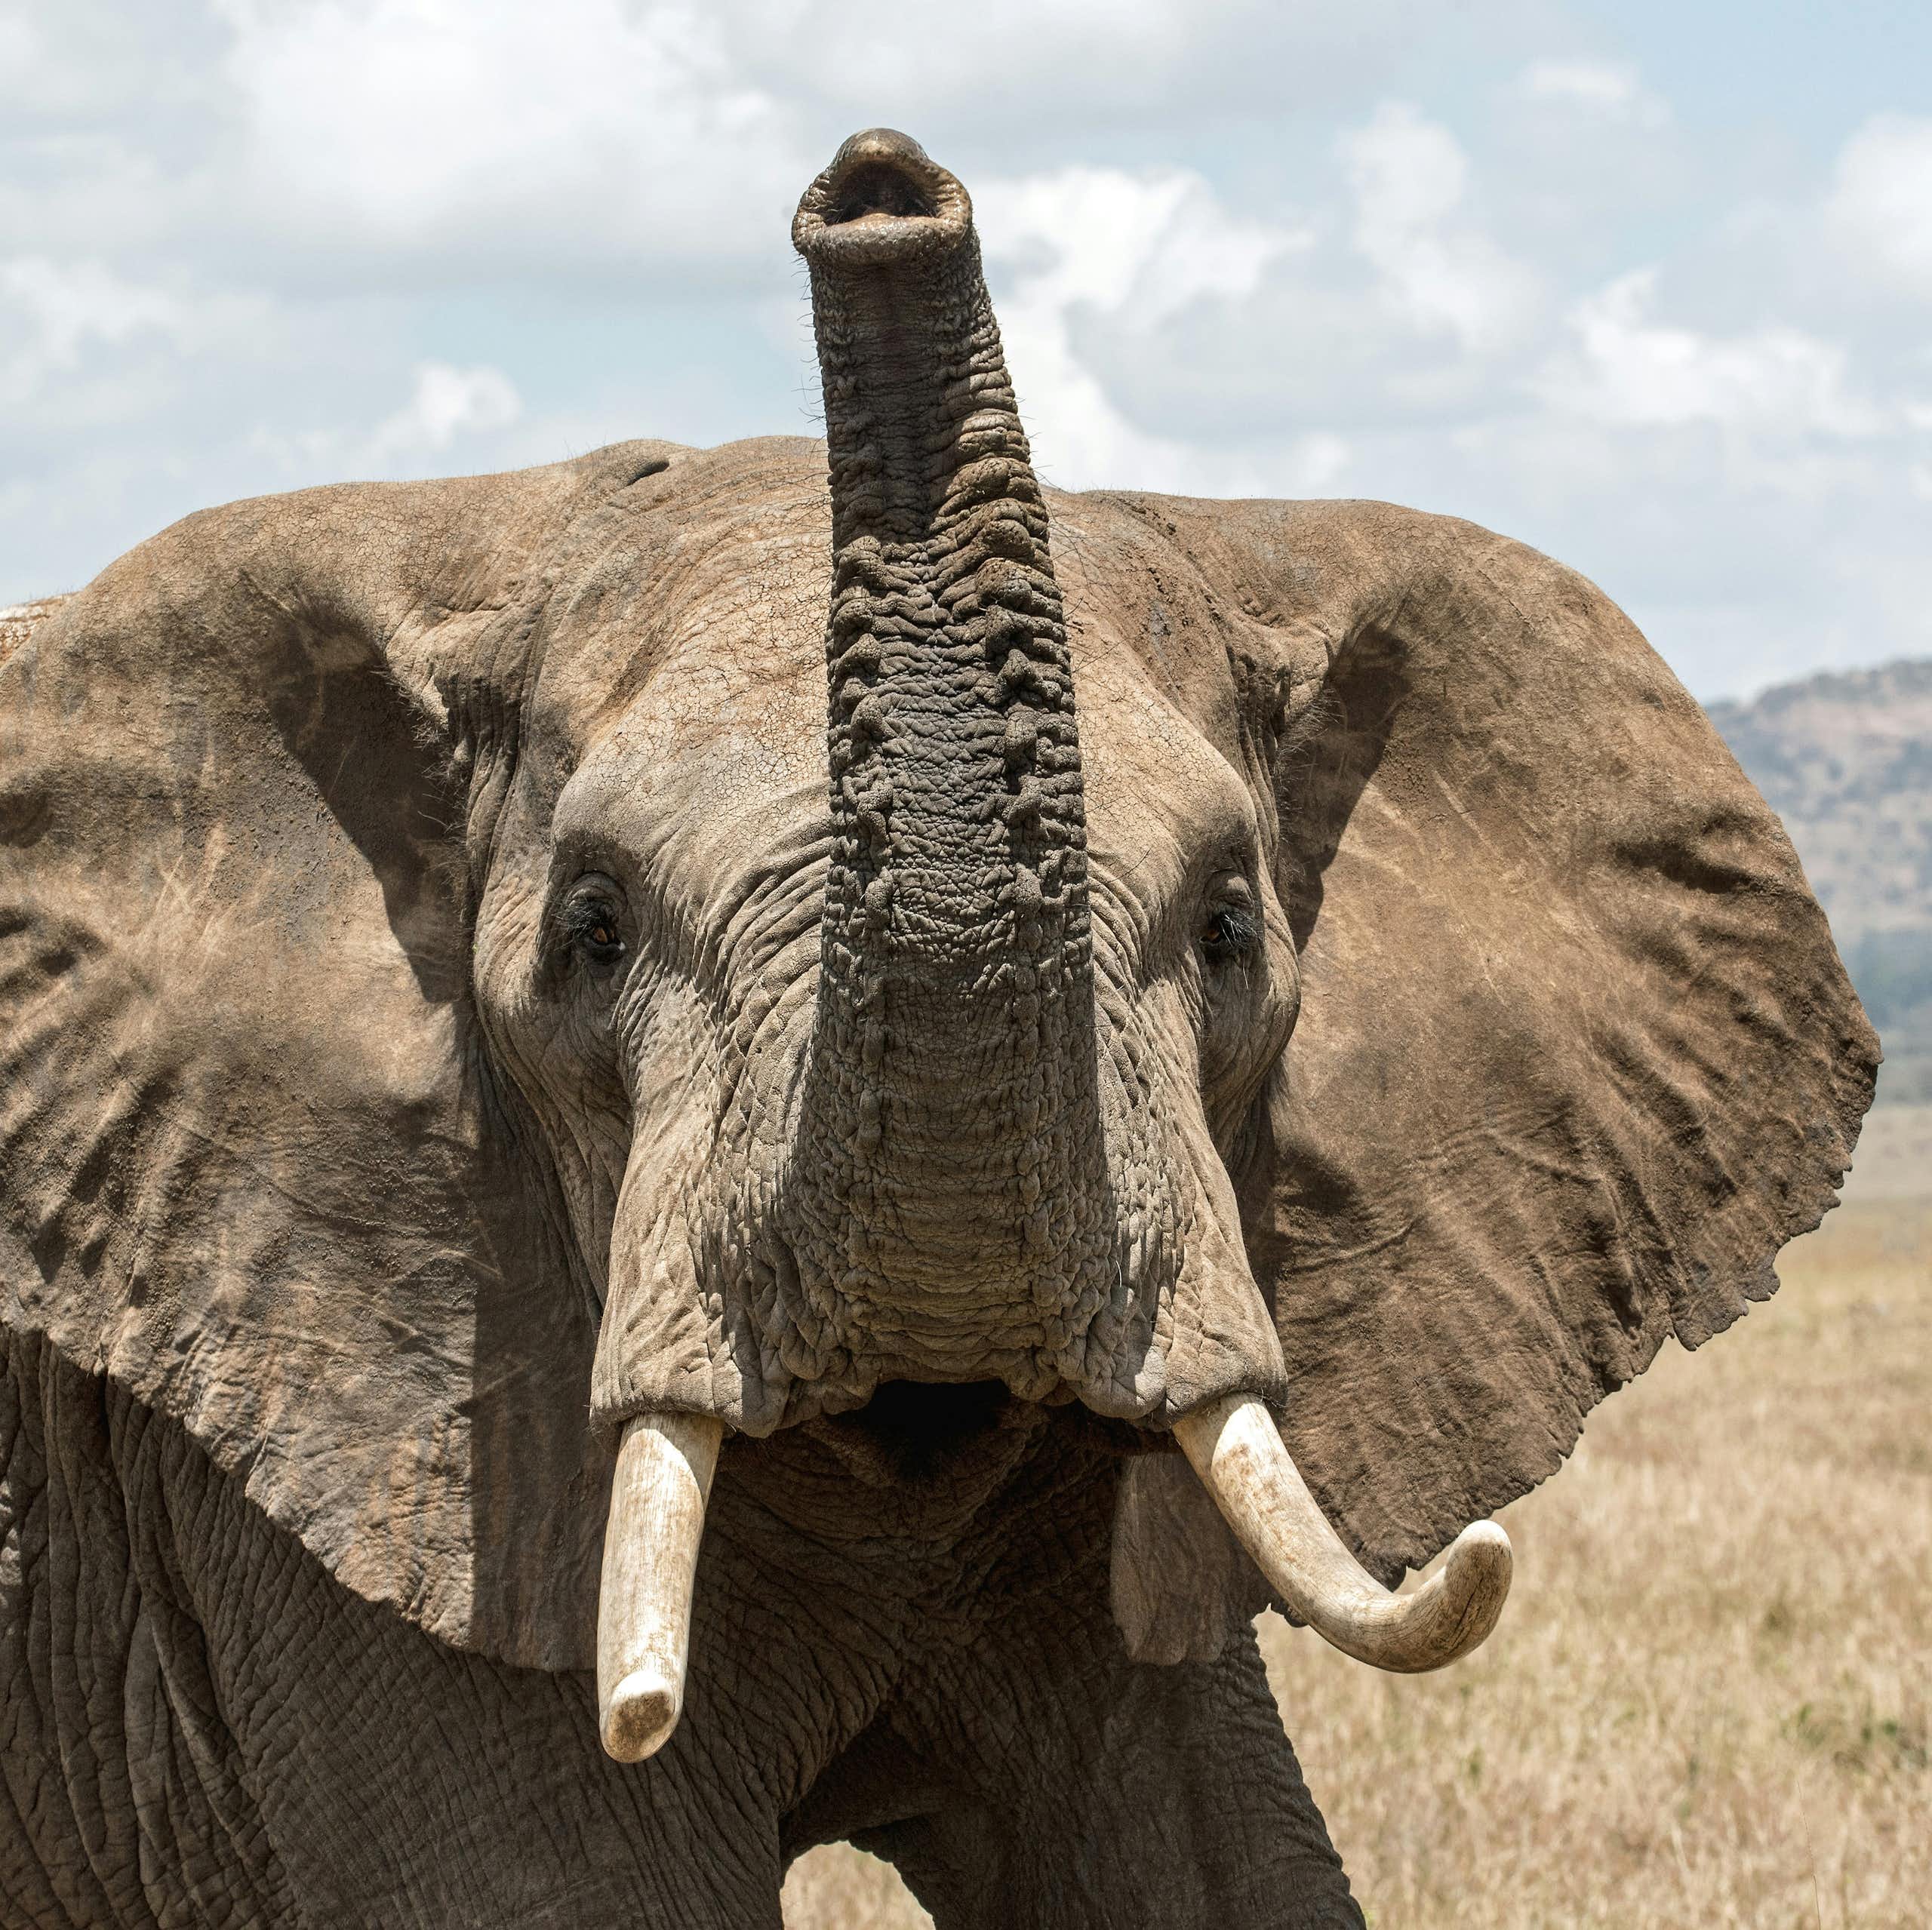 Un éléphant en plan rapproché, regardant vers l'objectif la trompe en l'air.